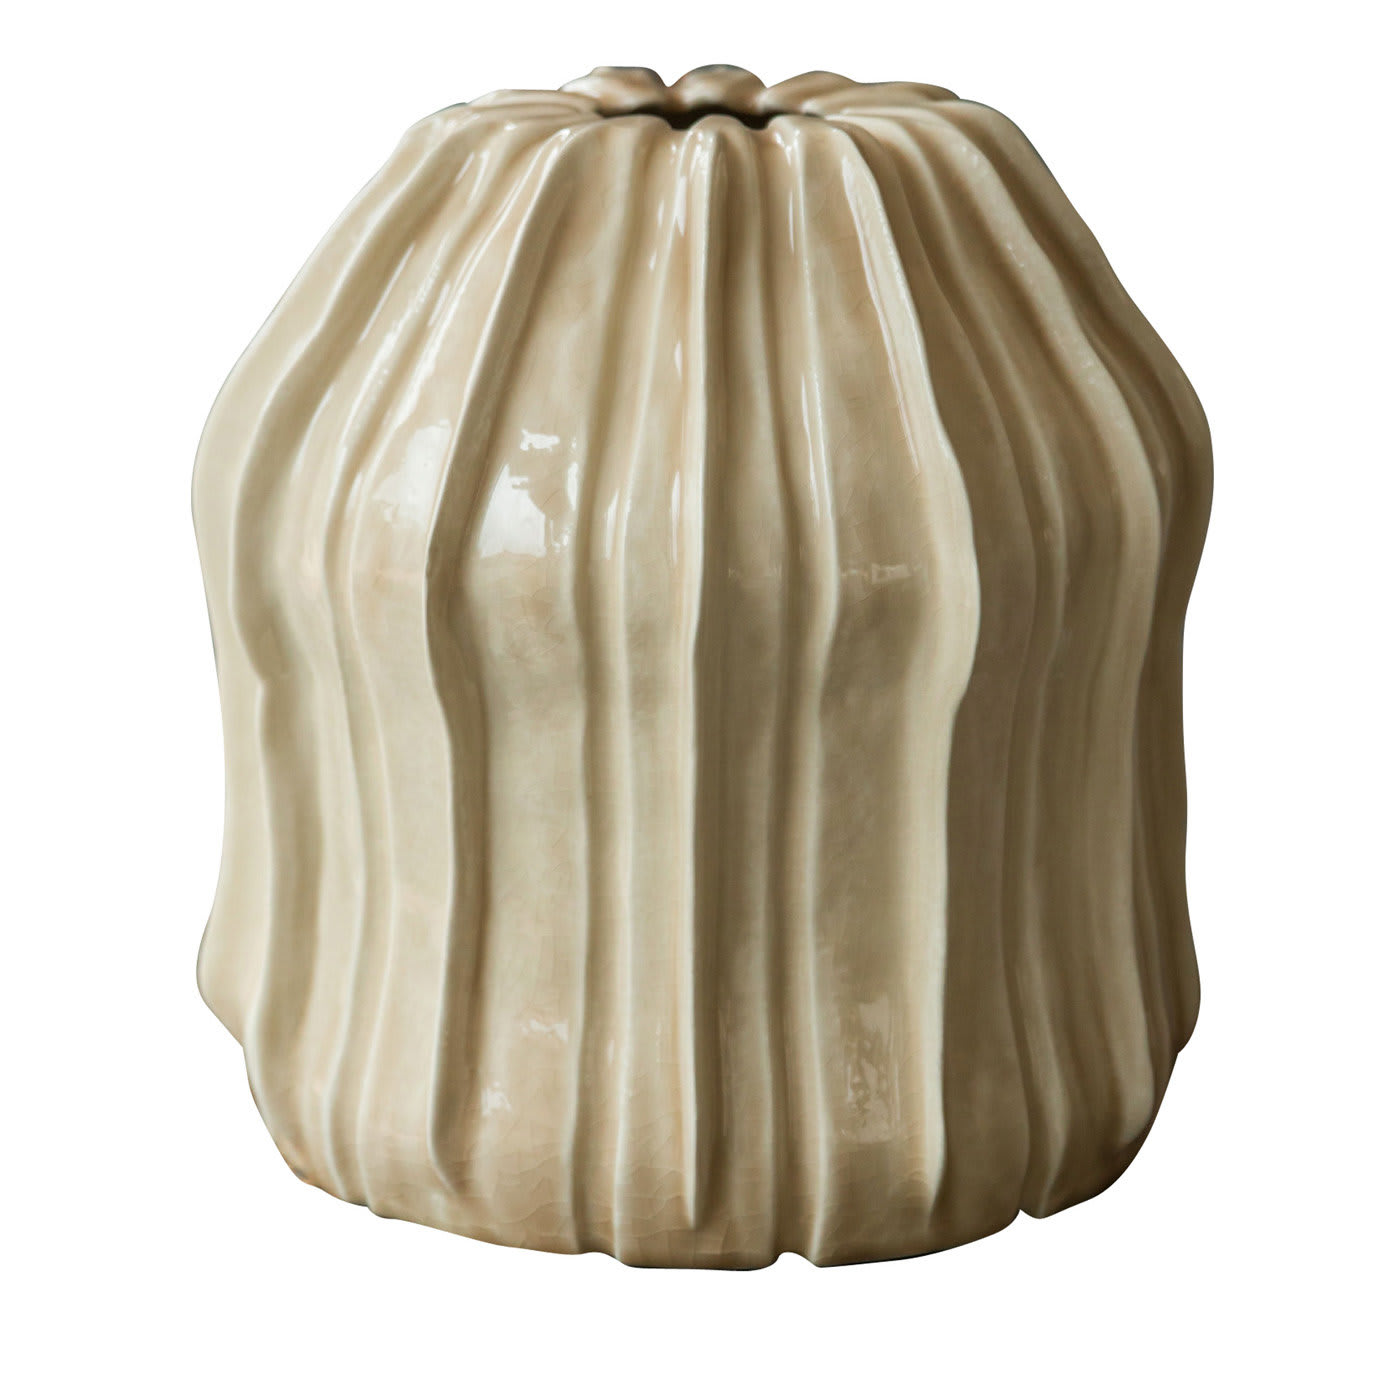 Dandelion Vase - AGGF Ceramics